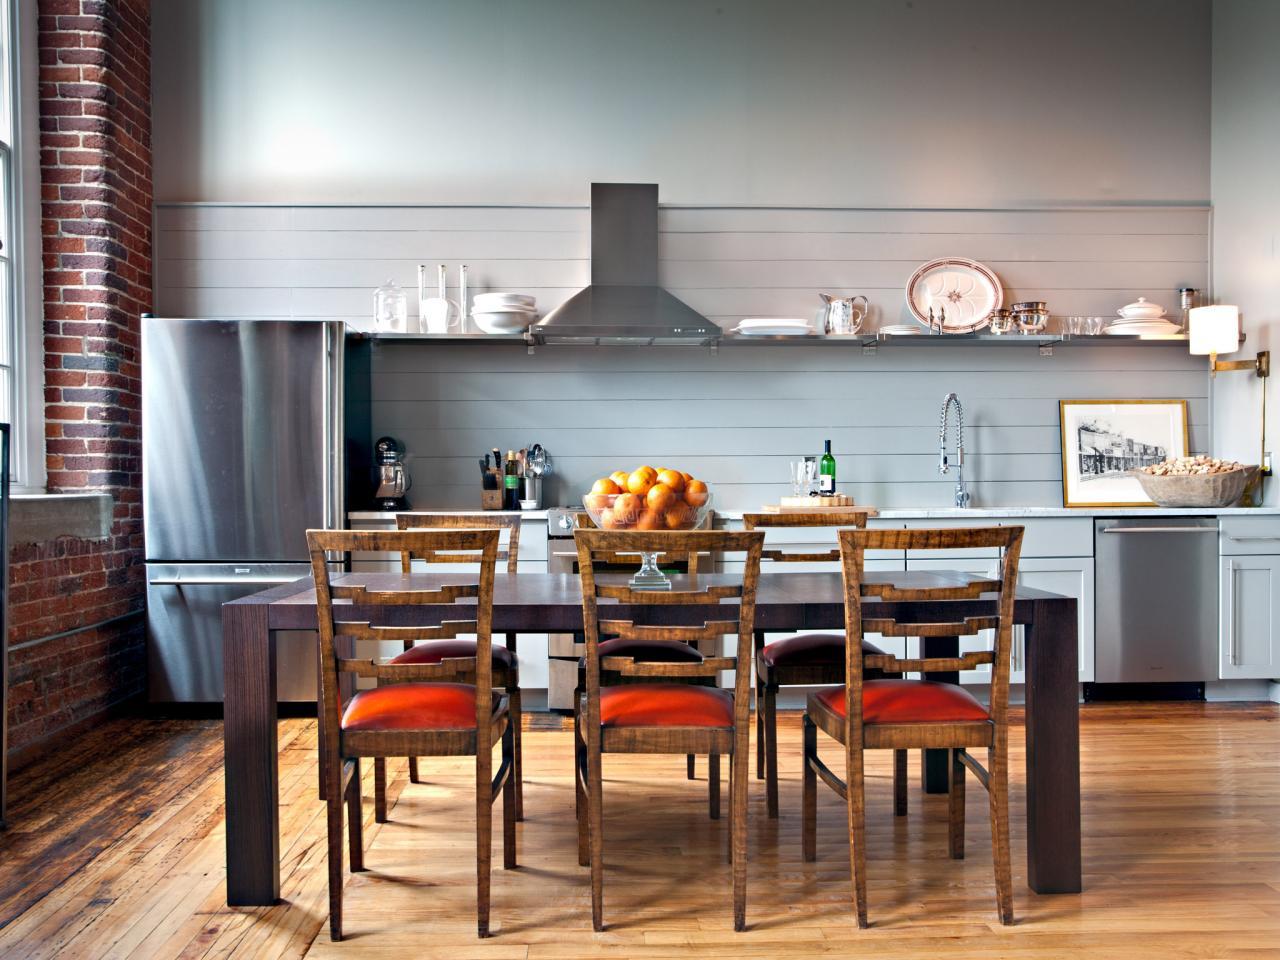 loft-open-concept-kitchen-dining-room-jpg-rend-hgtvcom-1280-960-jpeg.jpeg